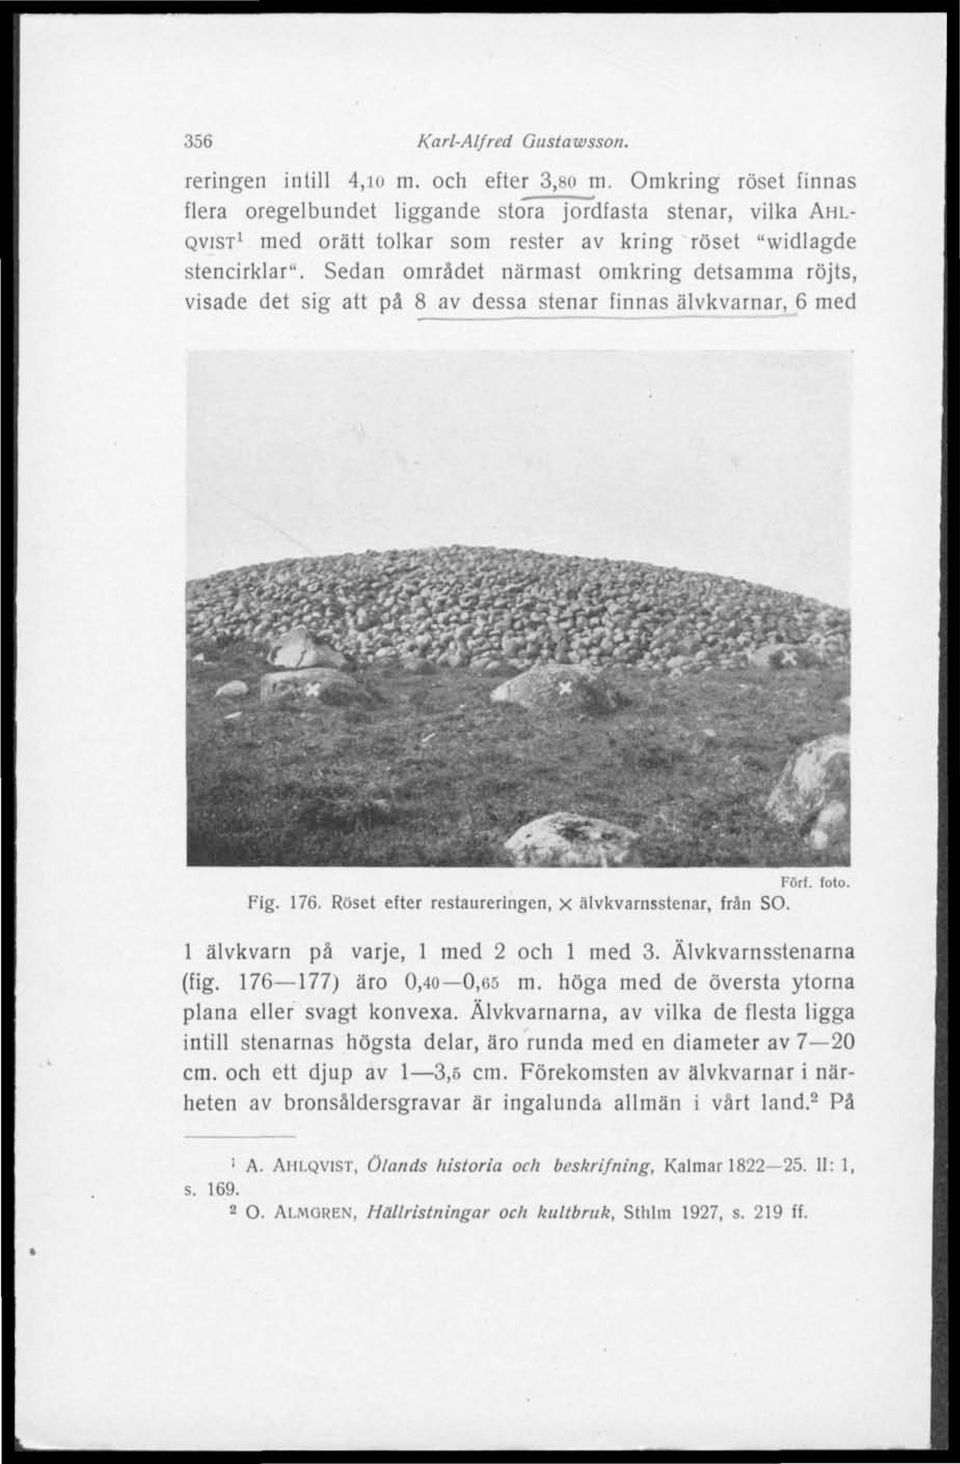 Sedan området närmast omkring detsamma röjts, visade det sig att på 8 av dessa stenar finnas älvkvarnar, 6 med Fört. foto. Fig. 176. Roset efter restaureringen, x älvkvarnsstenar, från SO.